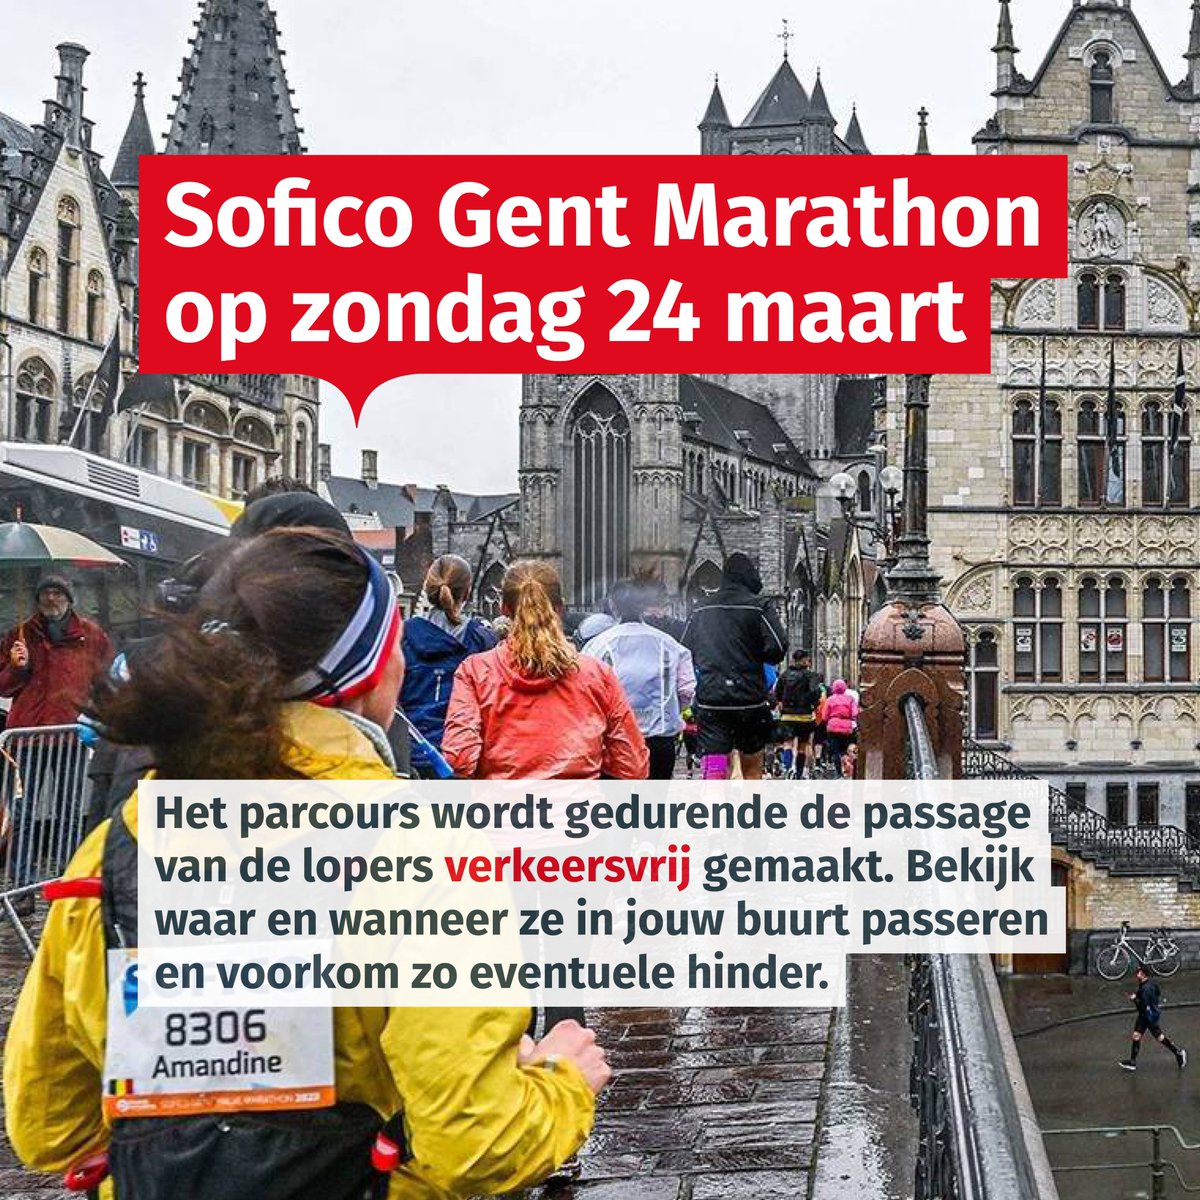 Op zondag 24 maart vindt de Sofico Gent Marathon plaats! 🏃 Het parcours wordt gedurende de passage van de lopers verkeersvrij gemaakt. Raadpleeg tijdig het overzicht en ontdek waar en wanneer de lopers in jouw buurt passeren. 👉 go.stad.gent/bewonersinfoma…